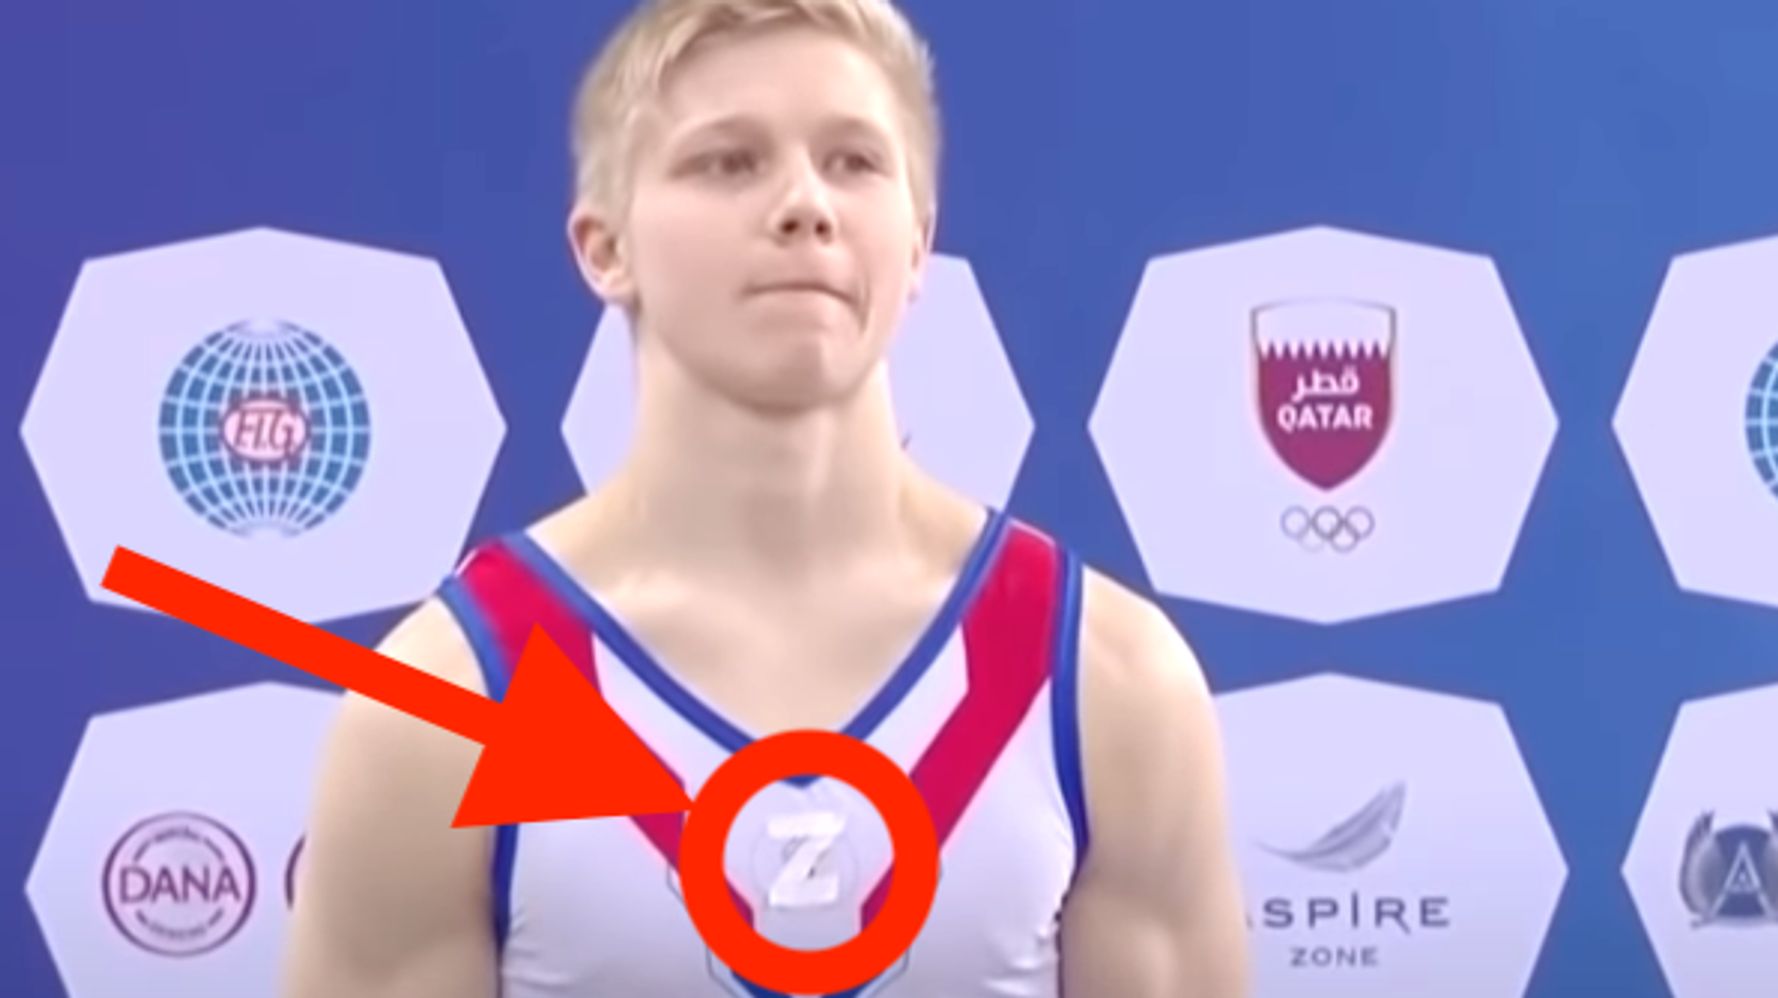 Un gymnaste russe banni pour avoir porté le symbole « Z » pro-guerre à côté d’un rival ukrainien